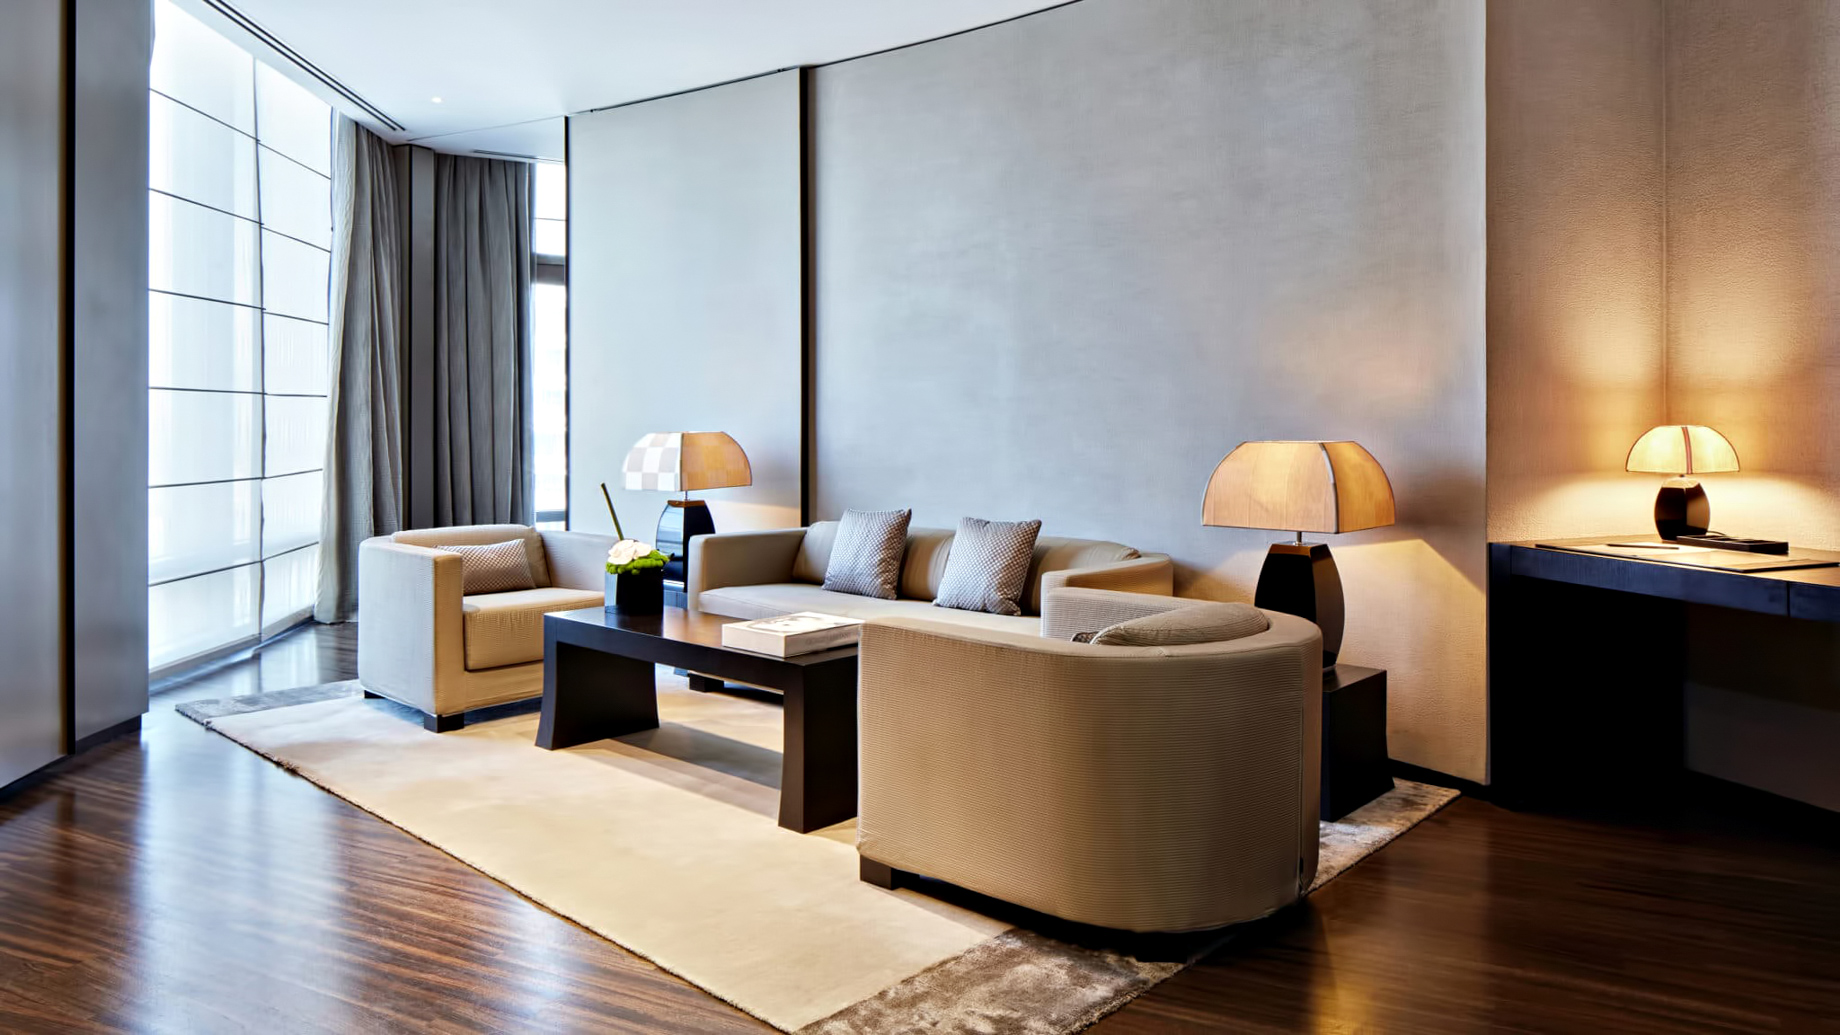 Armani Hotel Dubai – Burj Khalifa, Dubai, UAE – Armani Suite Lounge Area